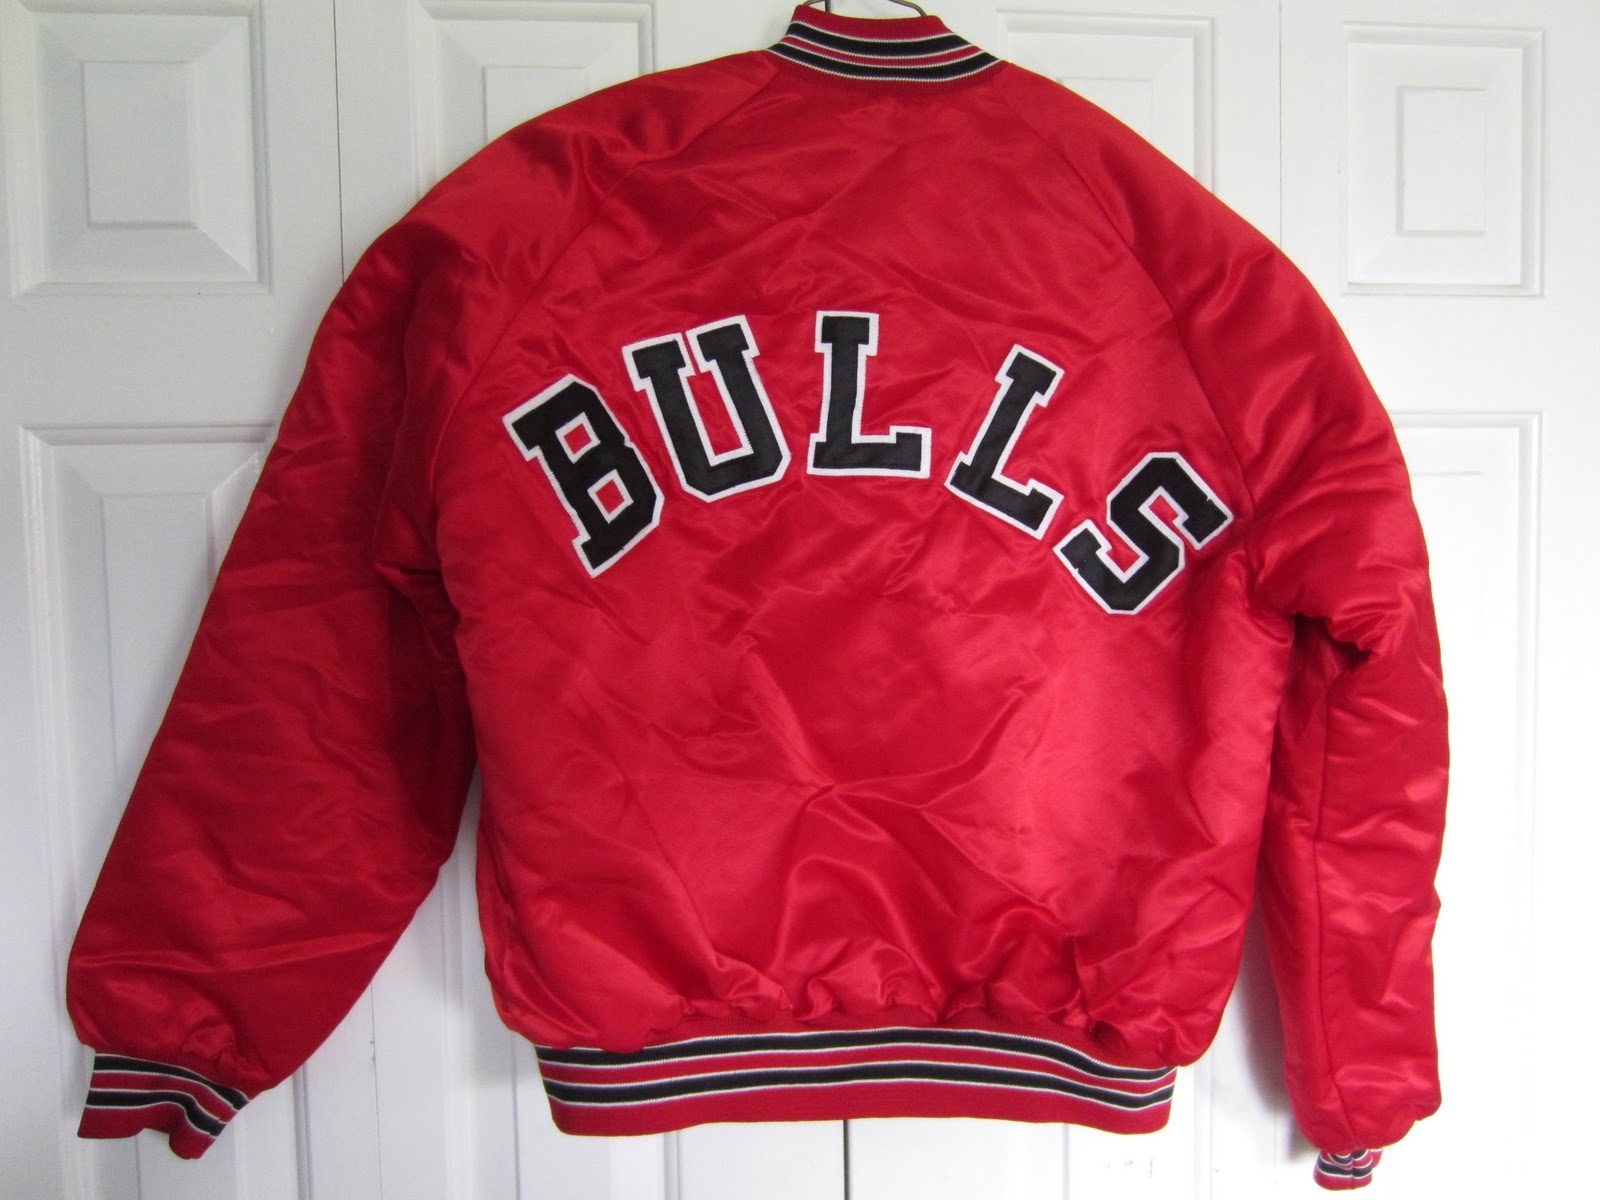 Vintage Sports Apparel: Vintage Chicago Bulls Chalk Line Jacket - SOLD OUT